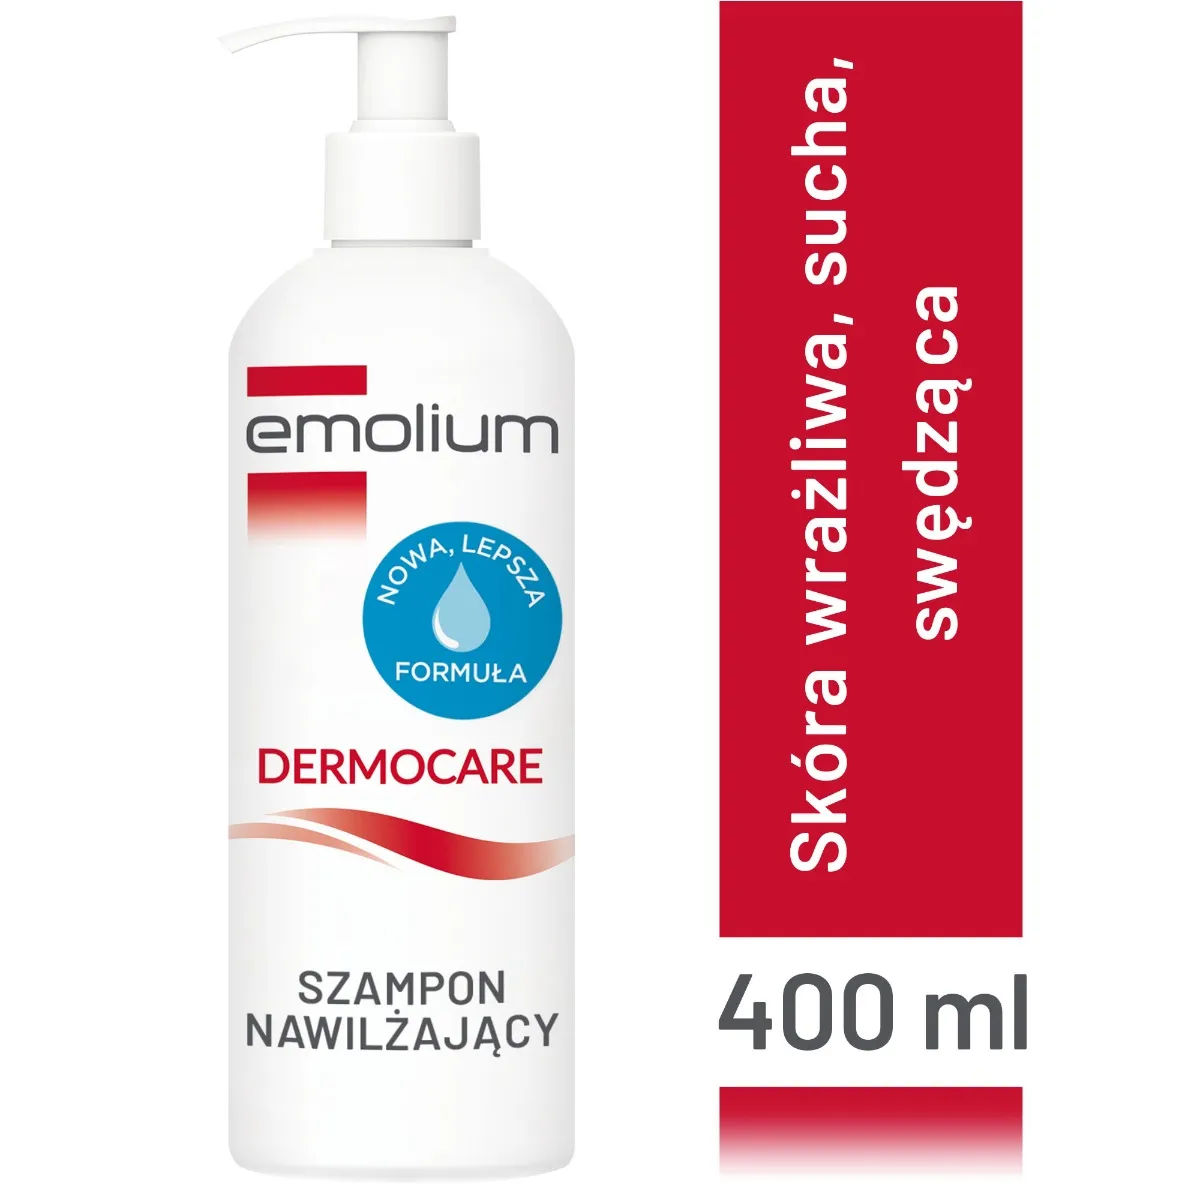 emolium szampon nawilżający 400